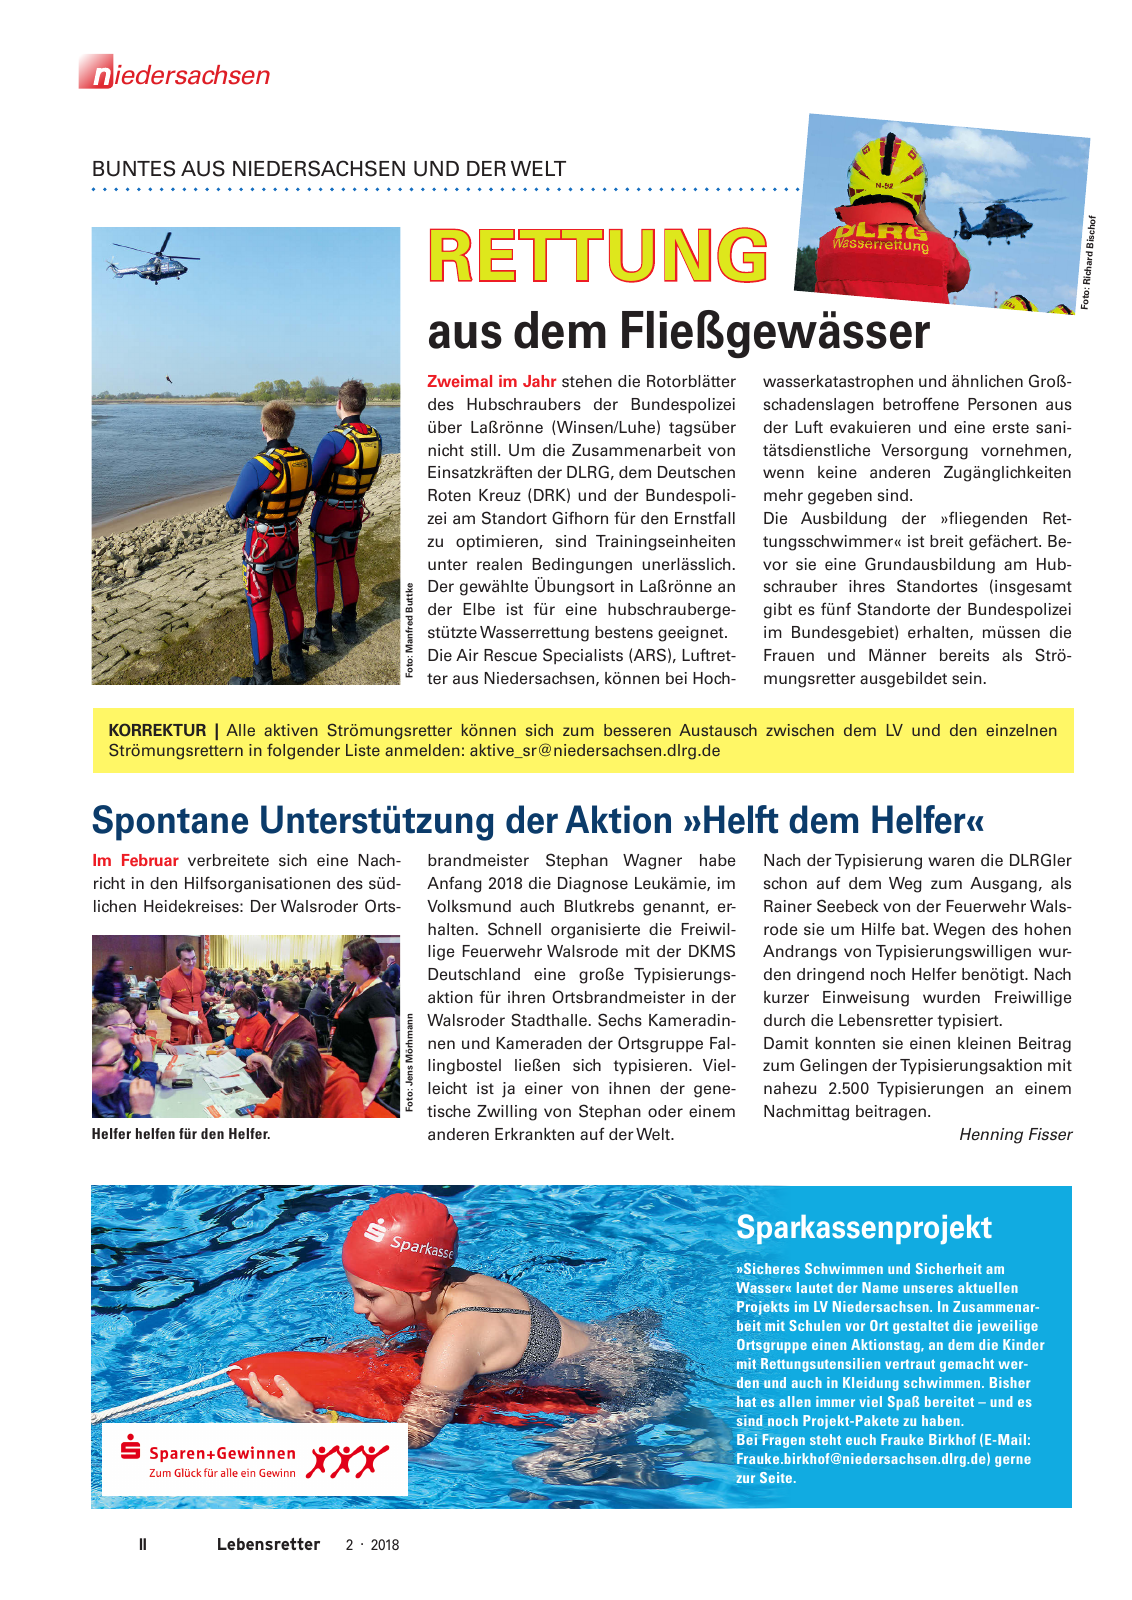 Vorschau Lebensretter 2/2018 - Regionalausgabe Niedersachsen Seite 4